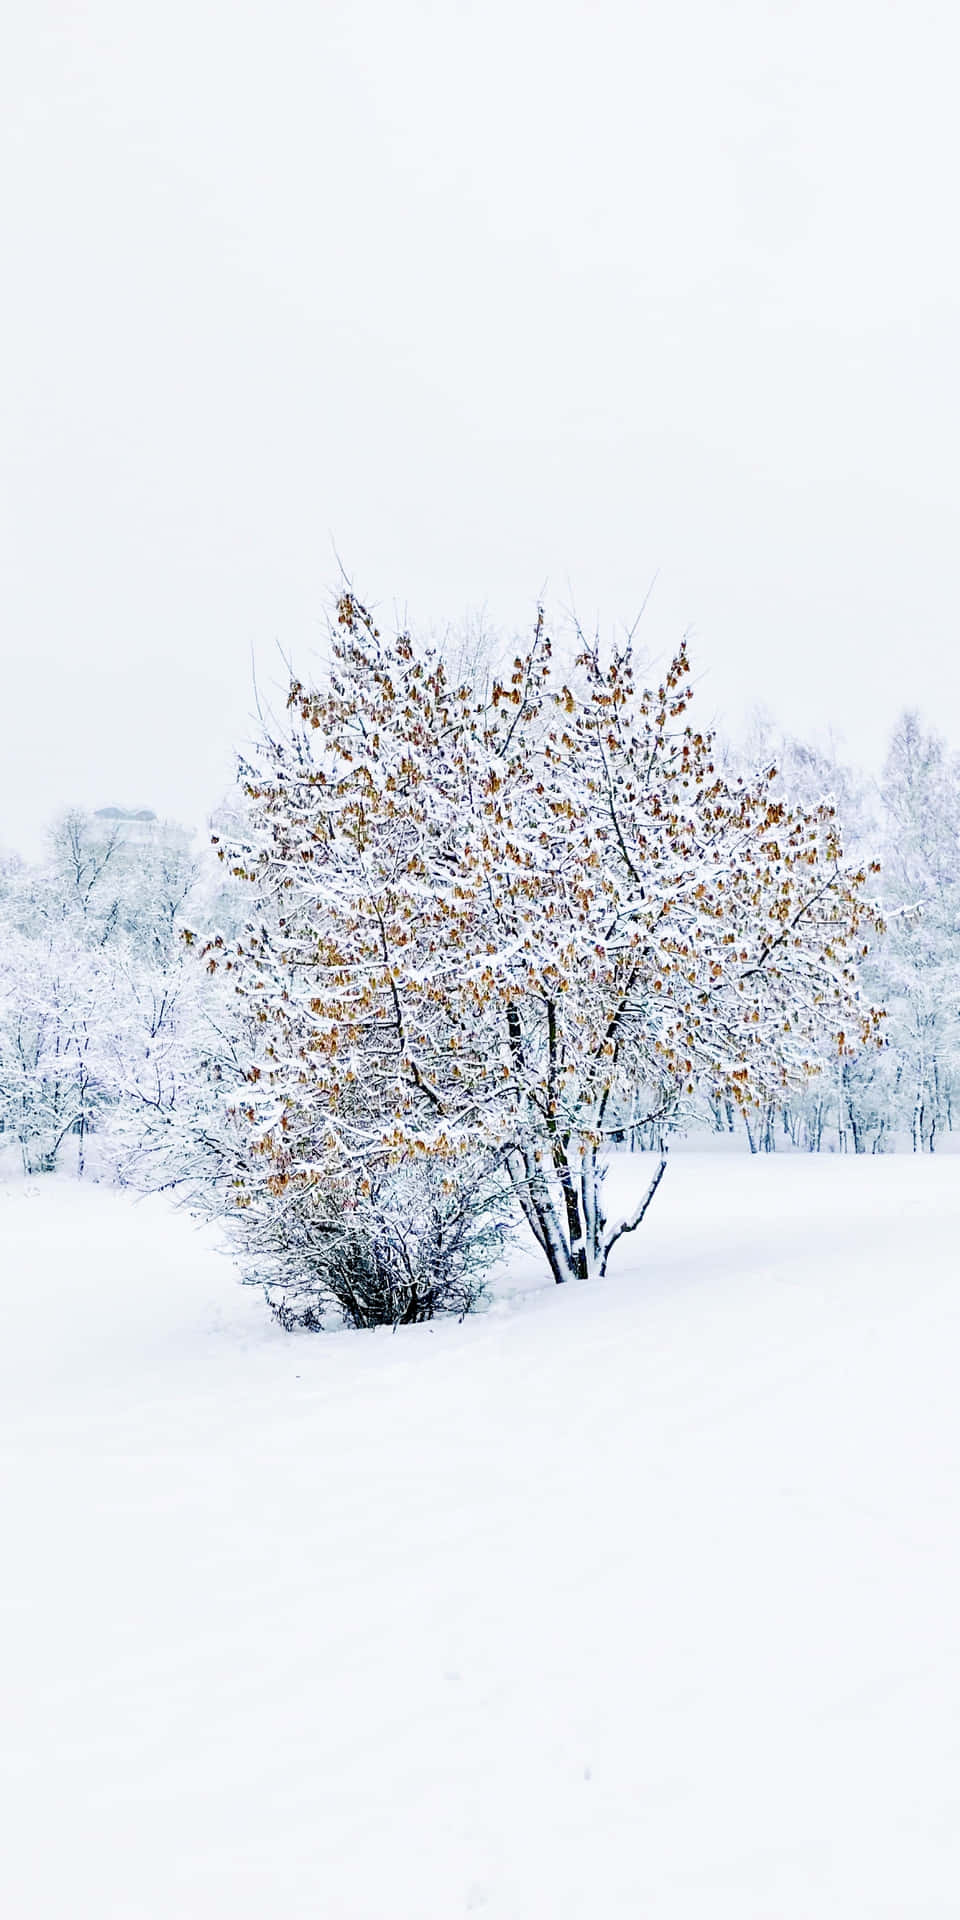 Solitary Treein Snowy Landscape.jpg Wallpaper